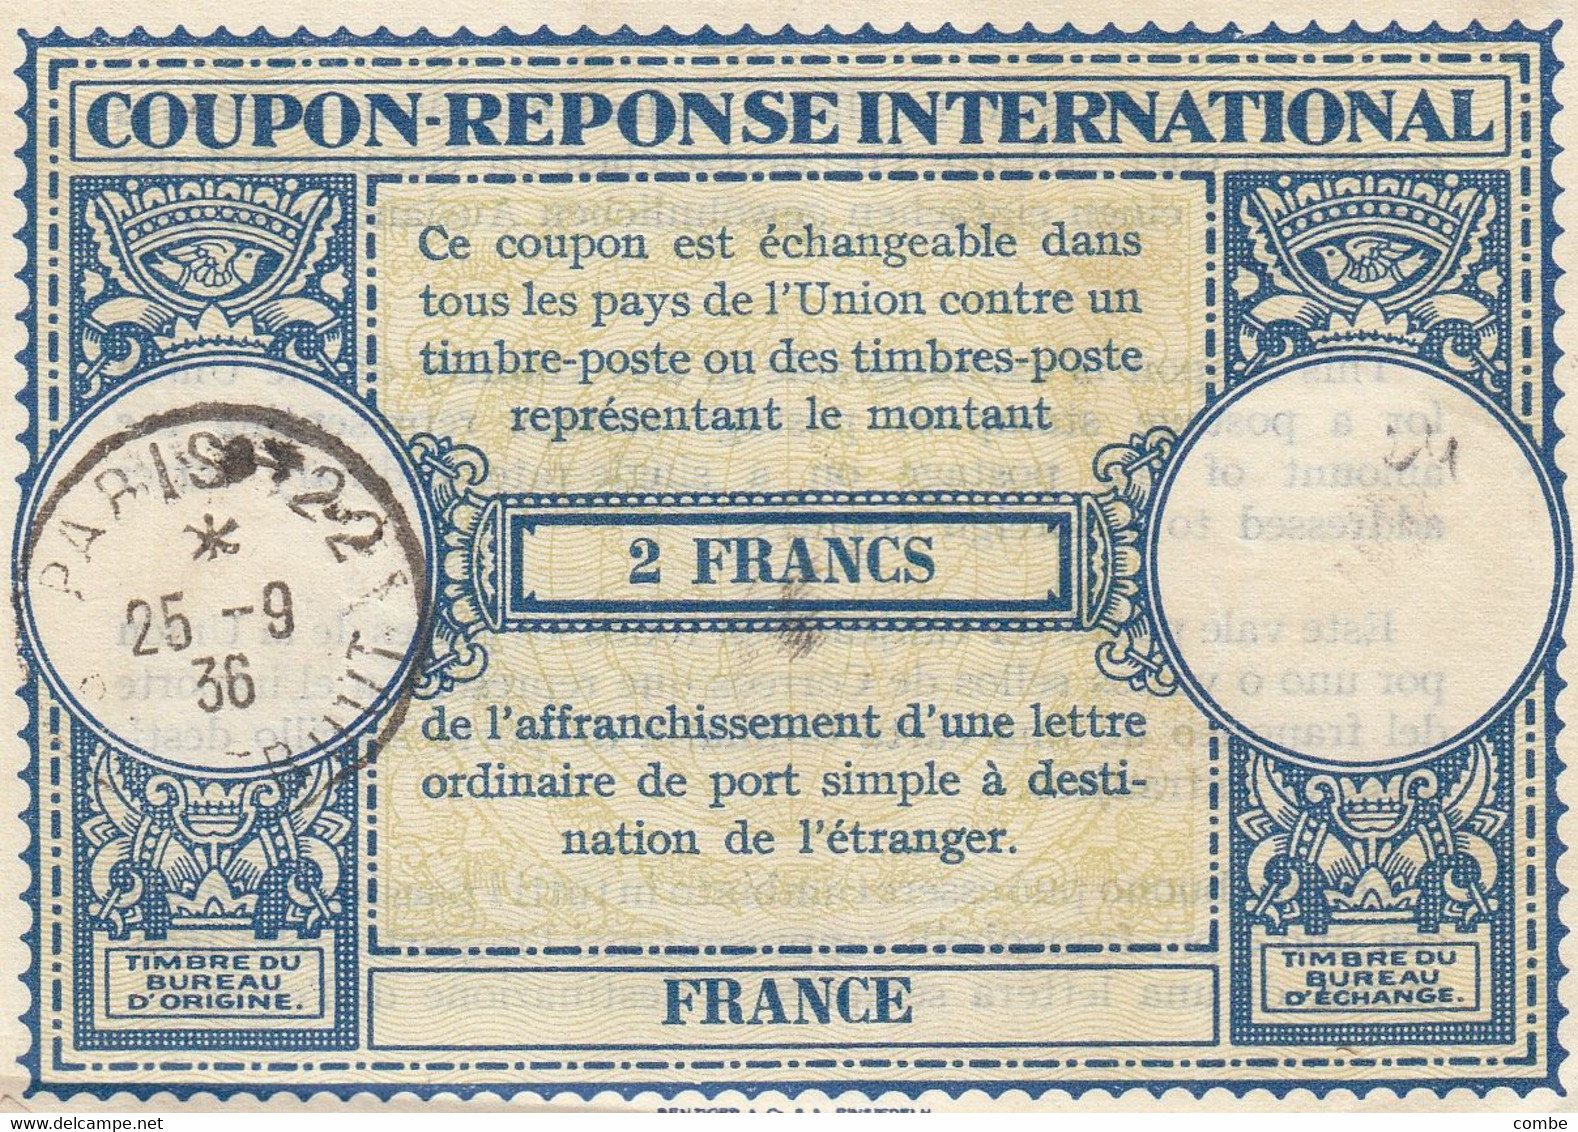 COUPON-REPONSE INTERNATIONAL. FRANCE. INTERNATIONAL REPLY. 2 FRANCS. PARIS 22 1936        /  2 - Coupons-réponse